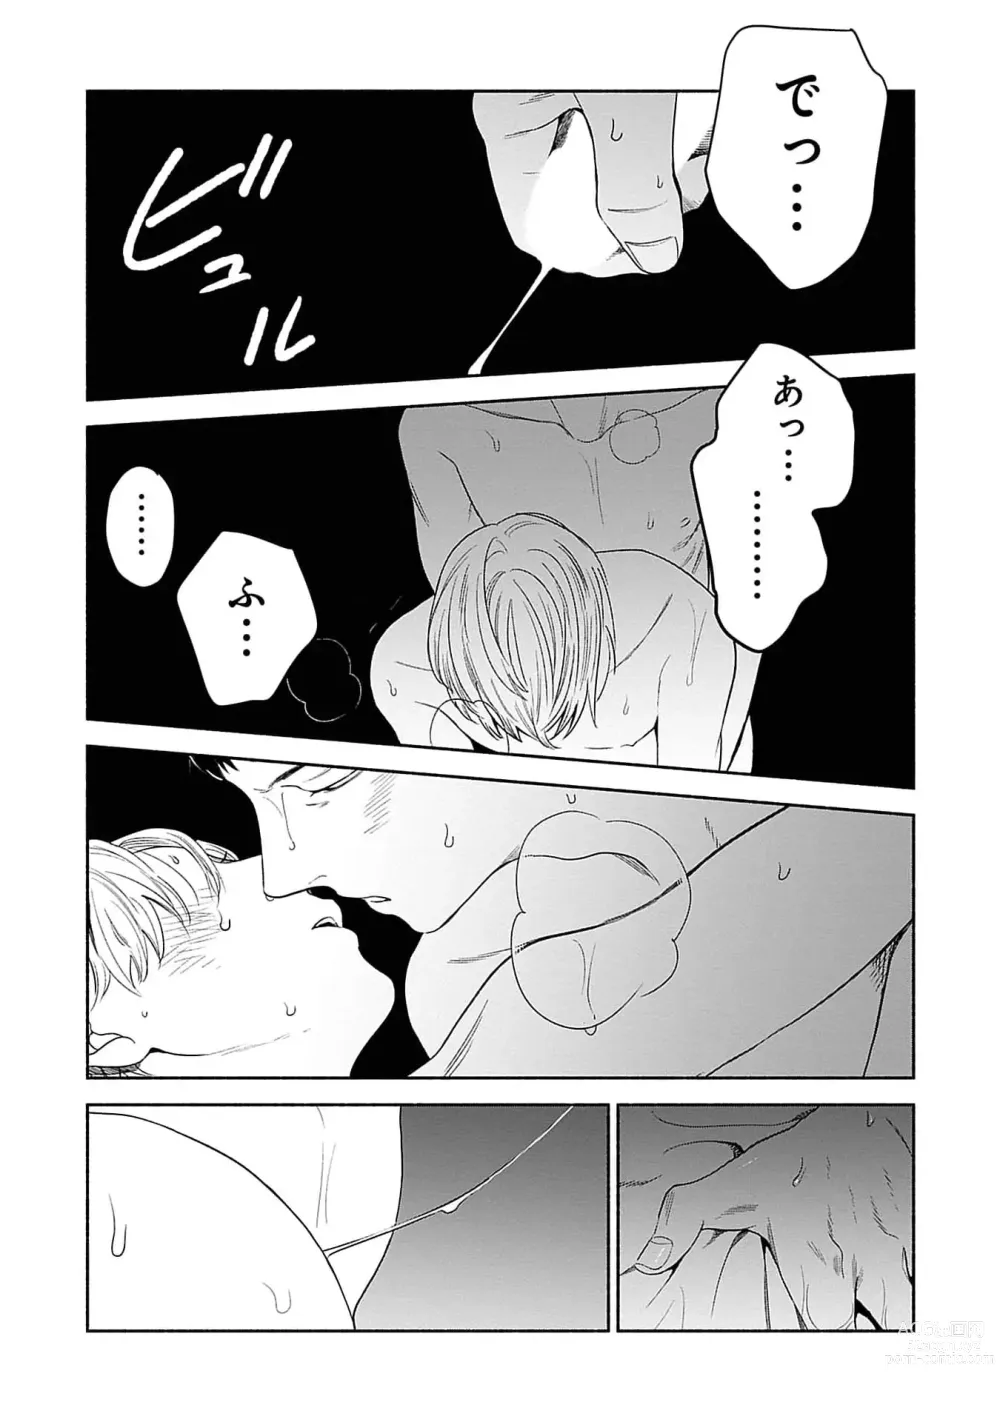 Page 177 of manga Yoru no Kyoudai